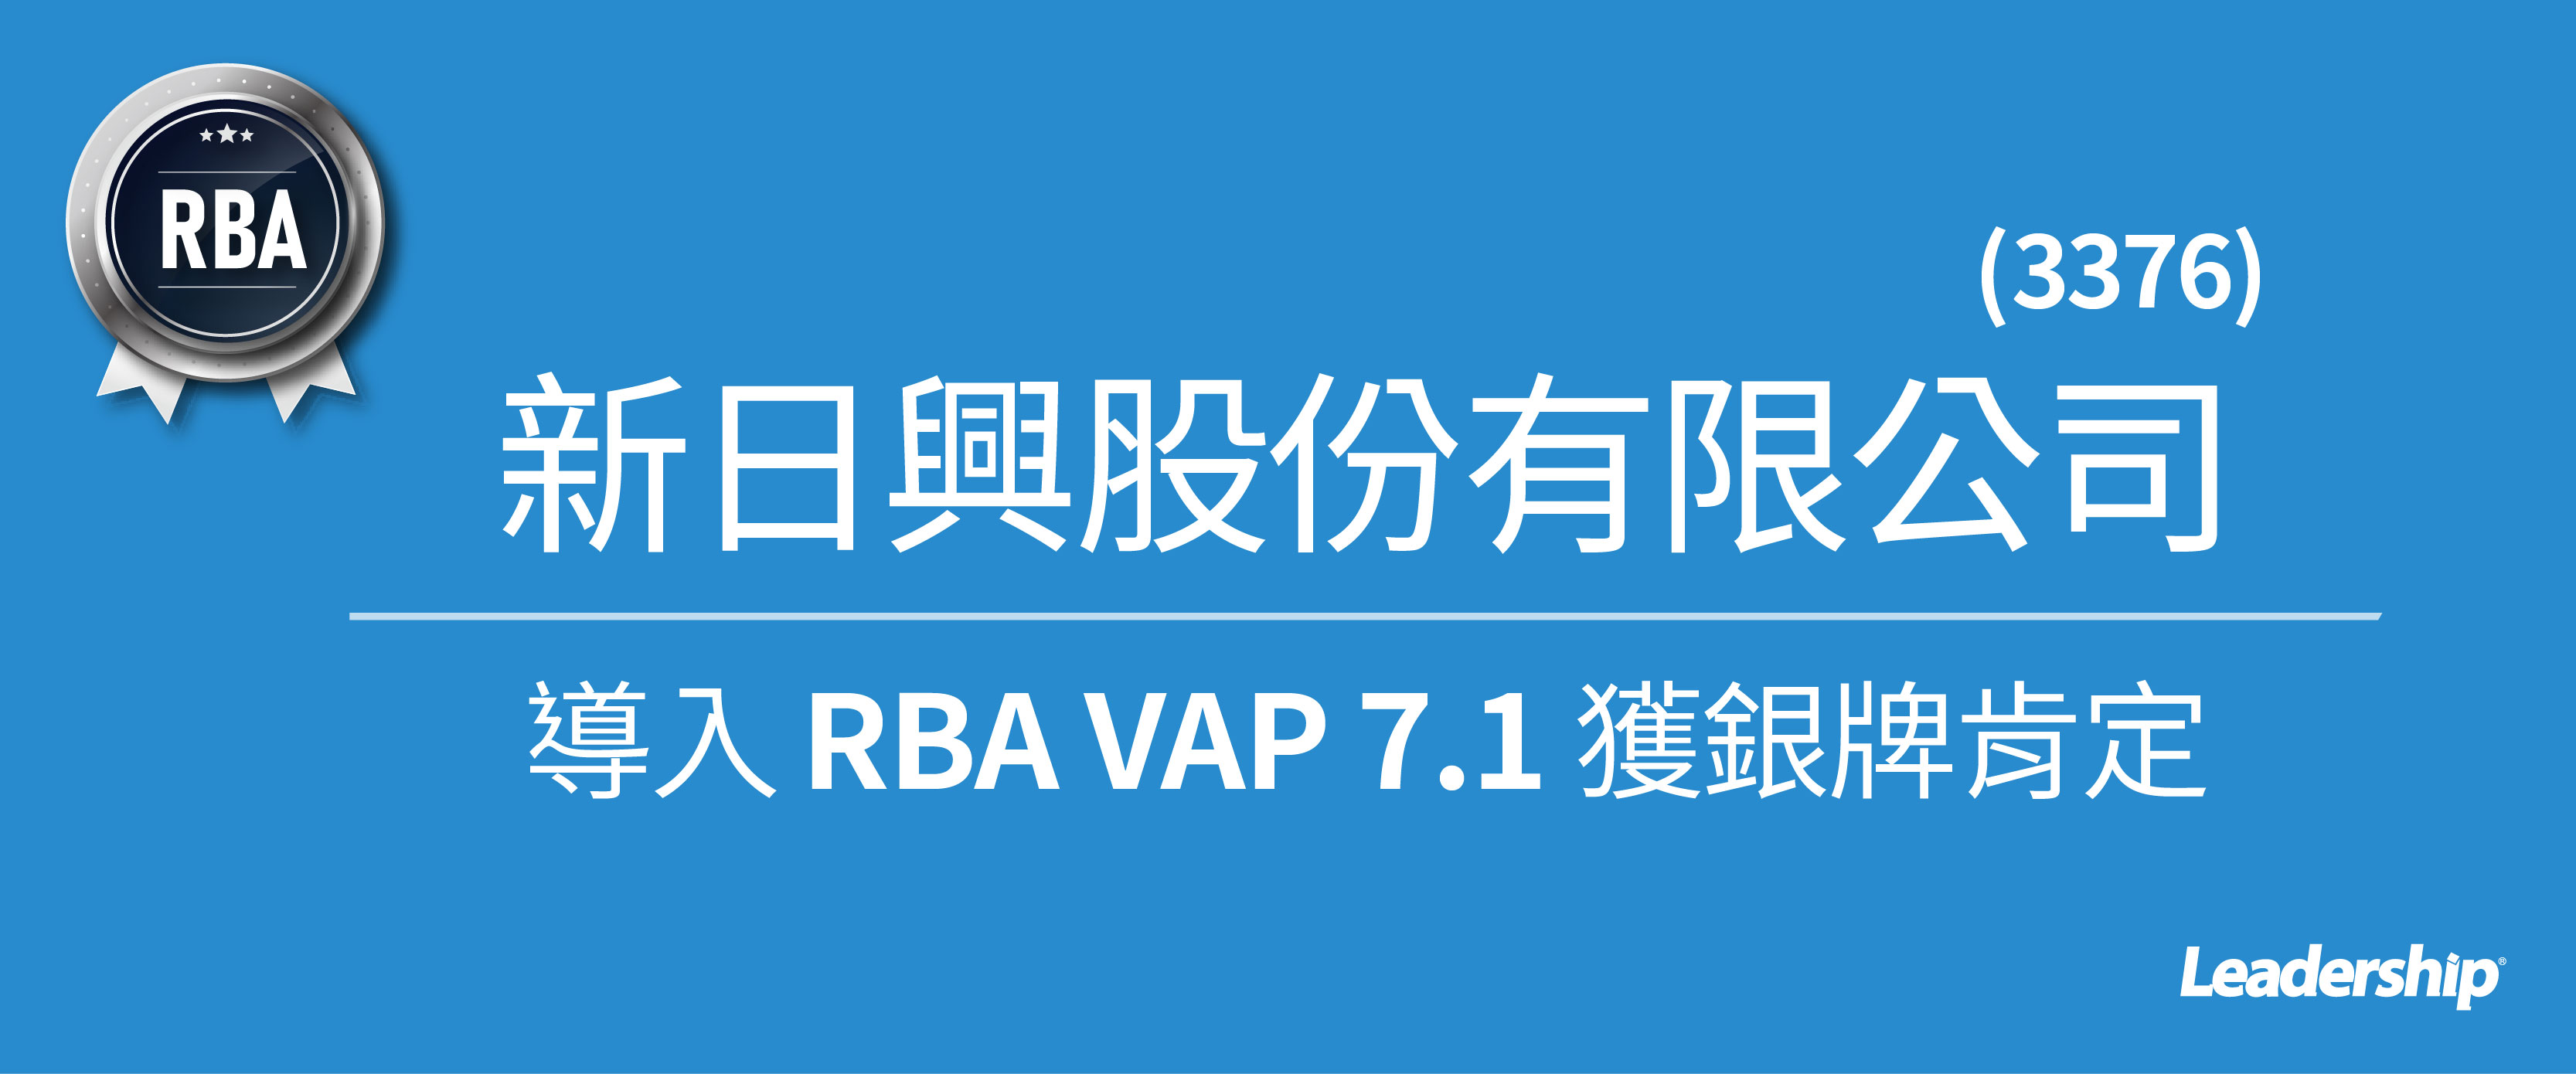 新日興 (3376) 選擇領導力企管導入 RBA VAP 7.1  獲「銀牌」肯定！